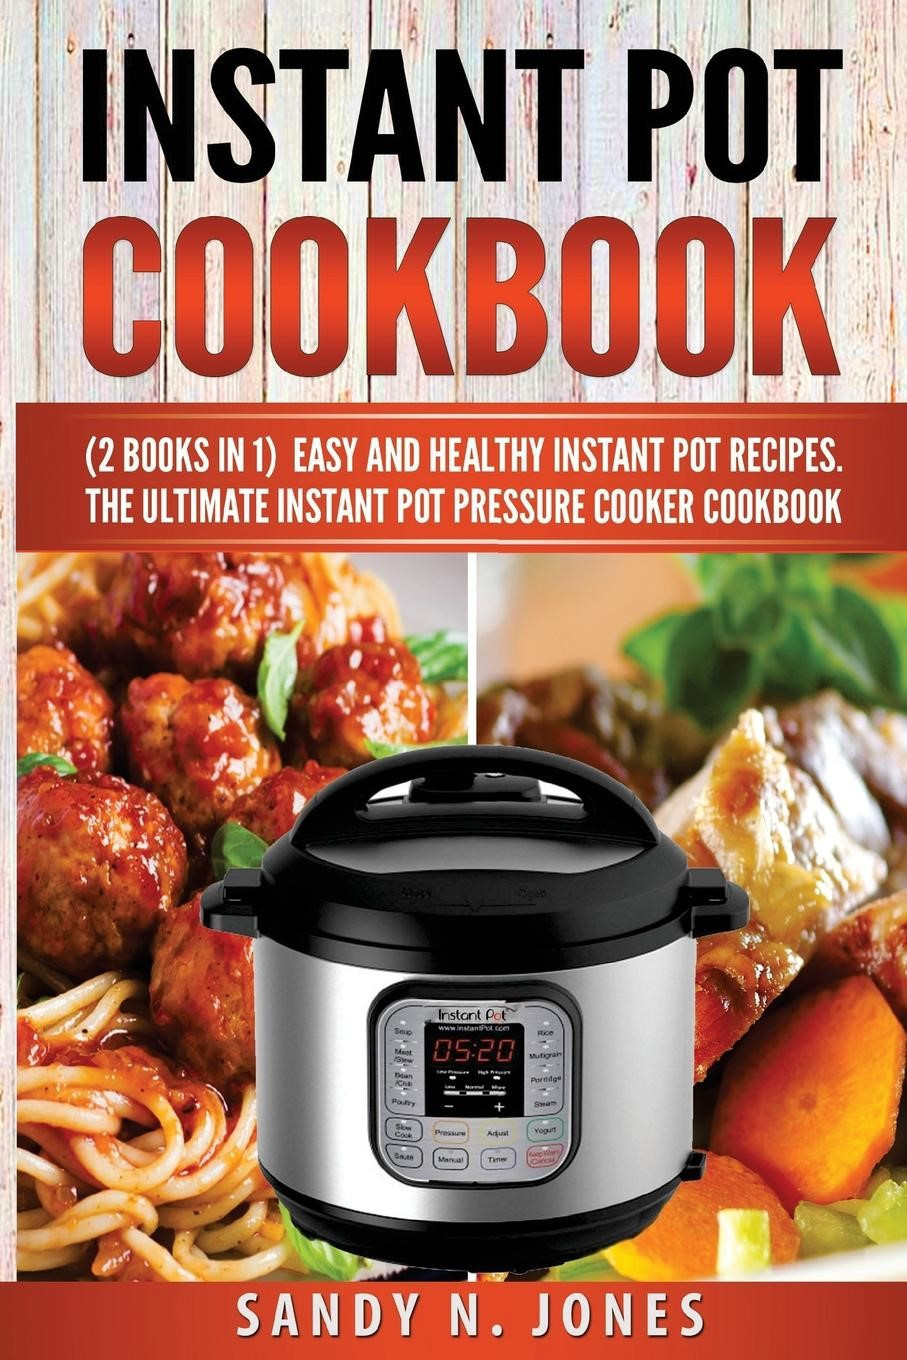 Easy Healthy Instant Pot Recipes
 Instant Pot Cookbook Easy and Healthy Instant Pot Recipes